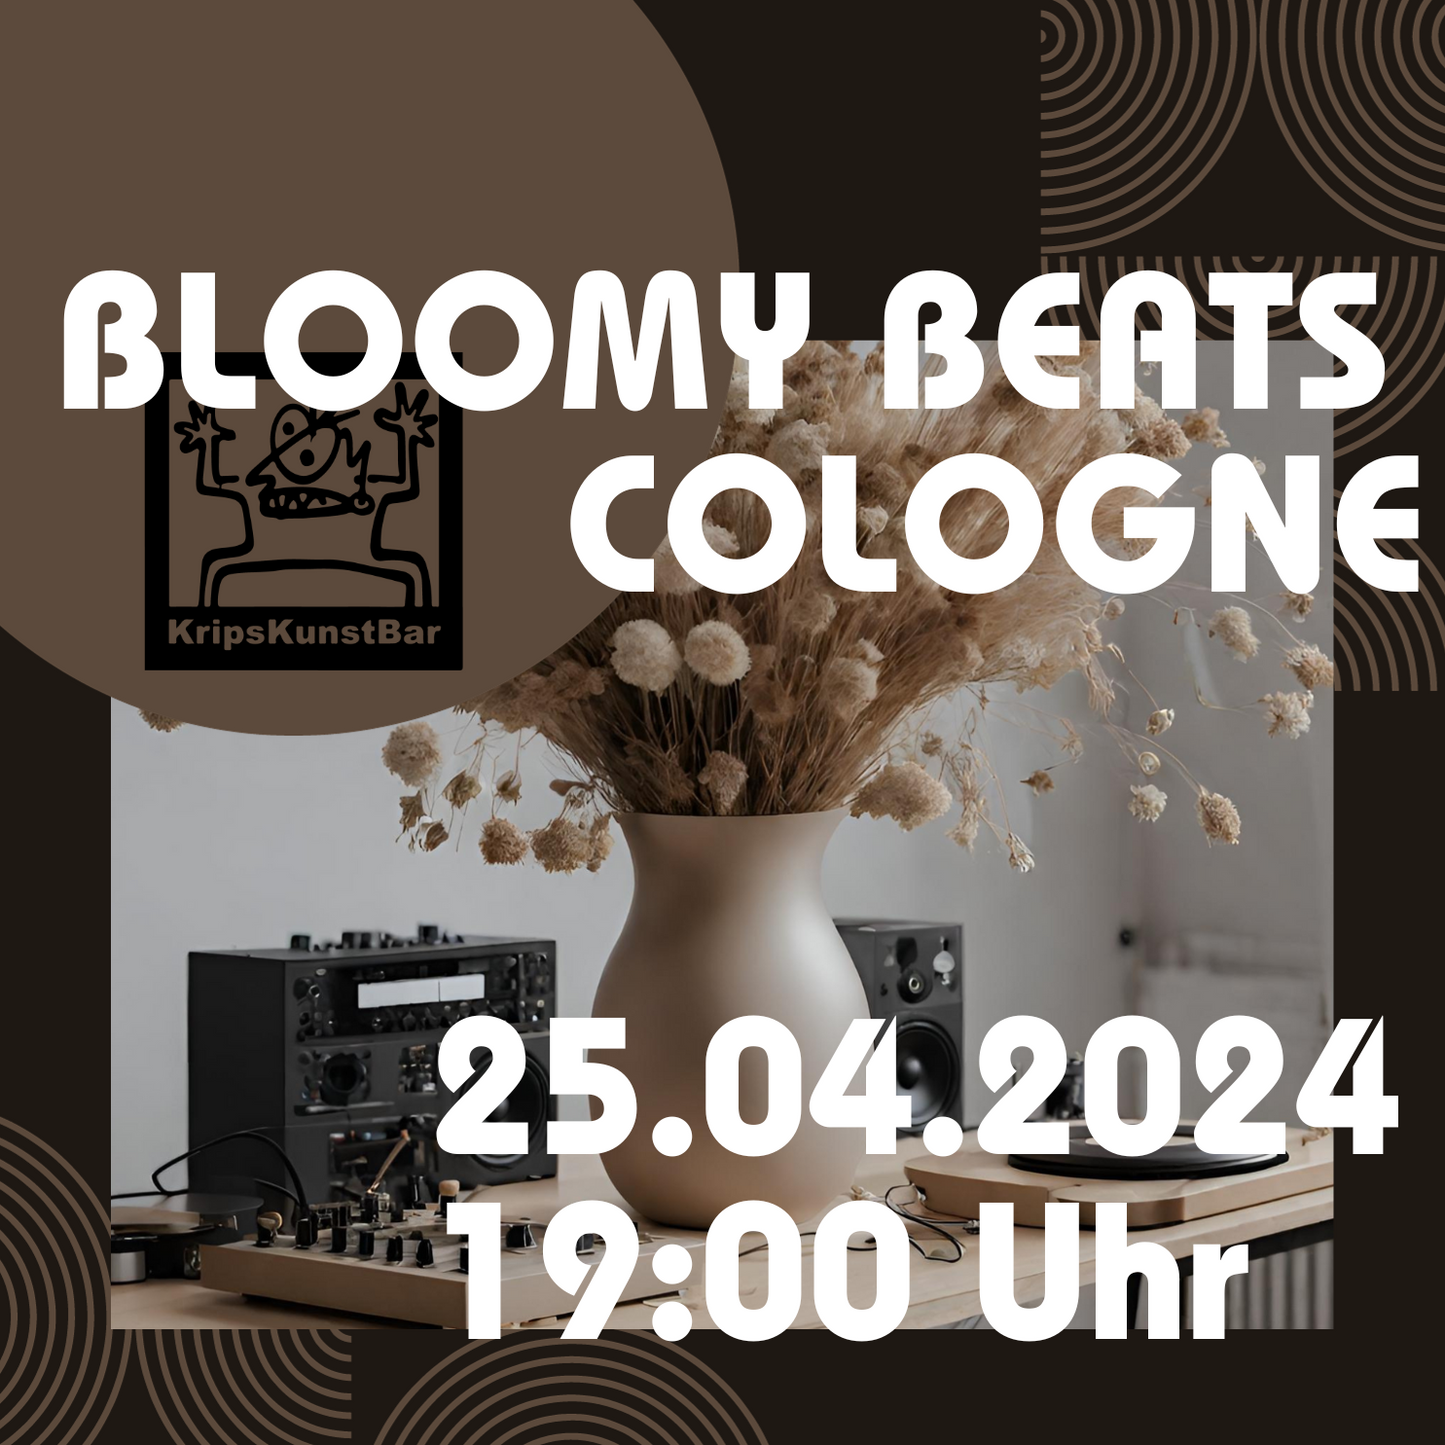 BLOOMY BEATS - Trockenblumenbouquet Workshop Kunstbar Köln 25.04.2024 19 Uhr